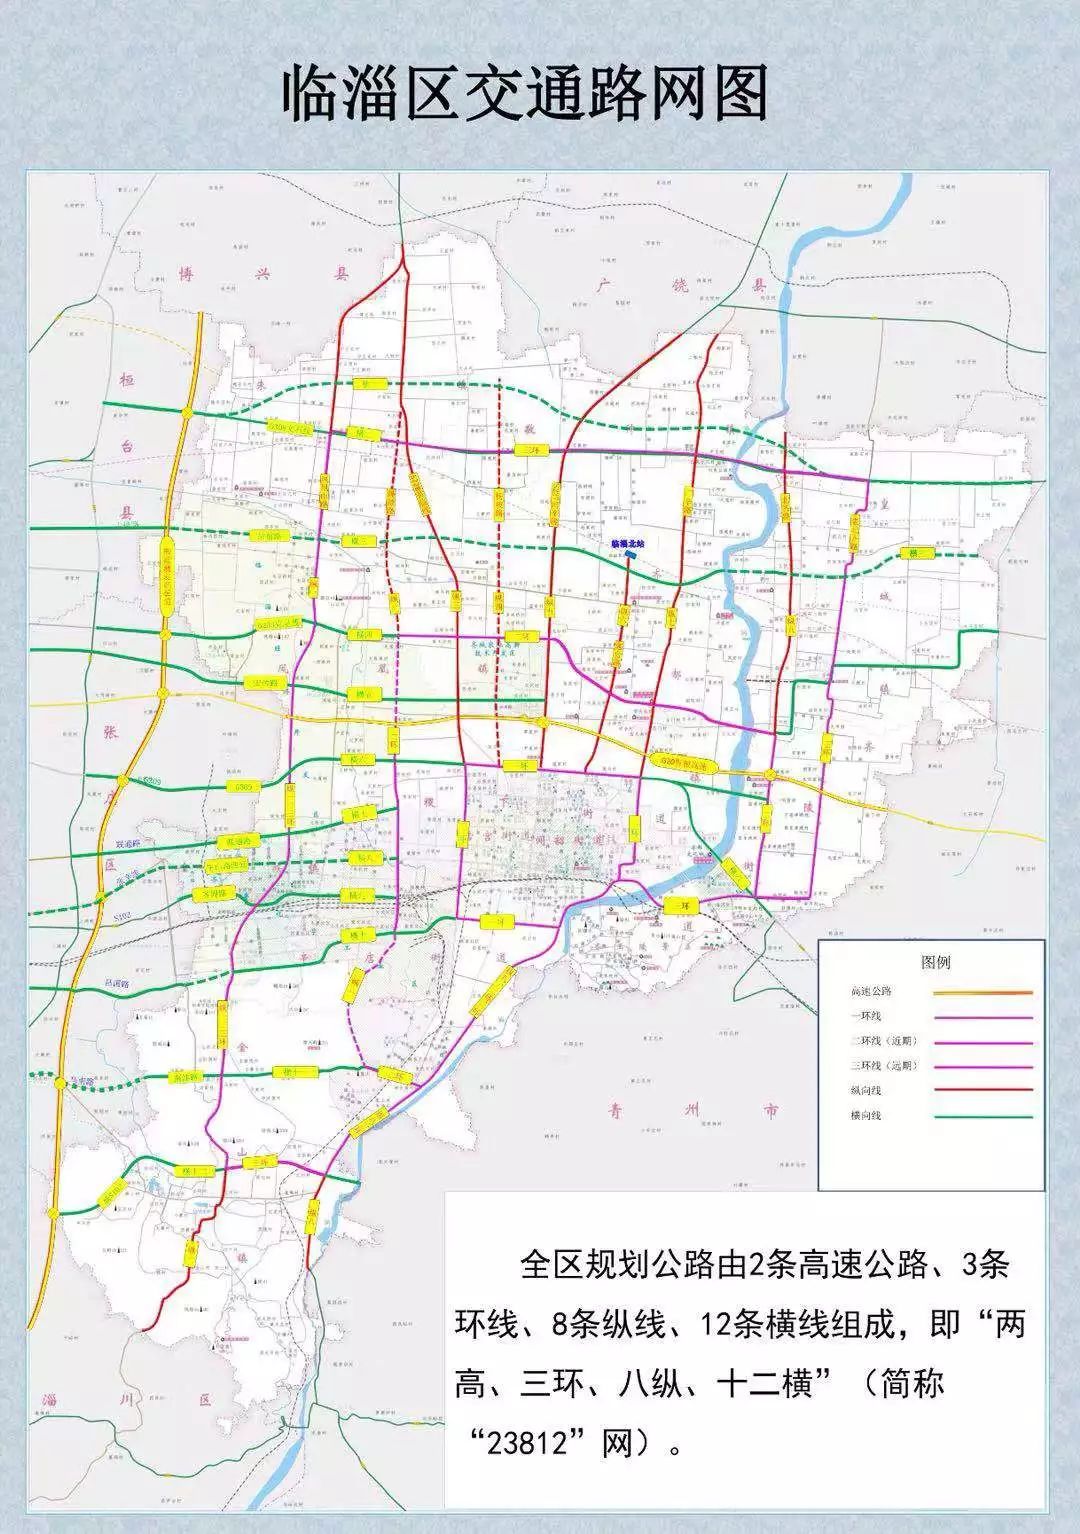 淄博临淄今年将拓宽修建这些道路经过你家吗